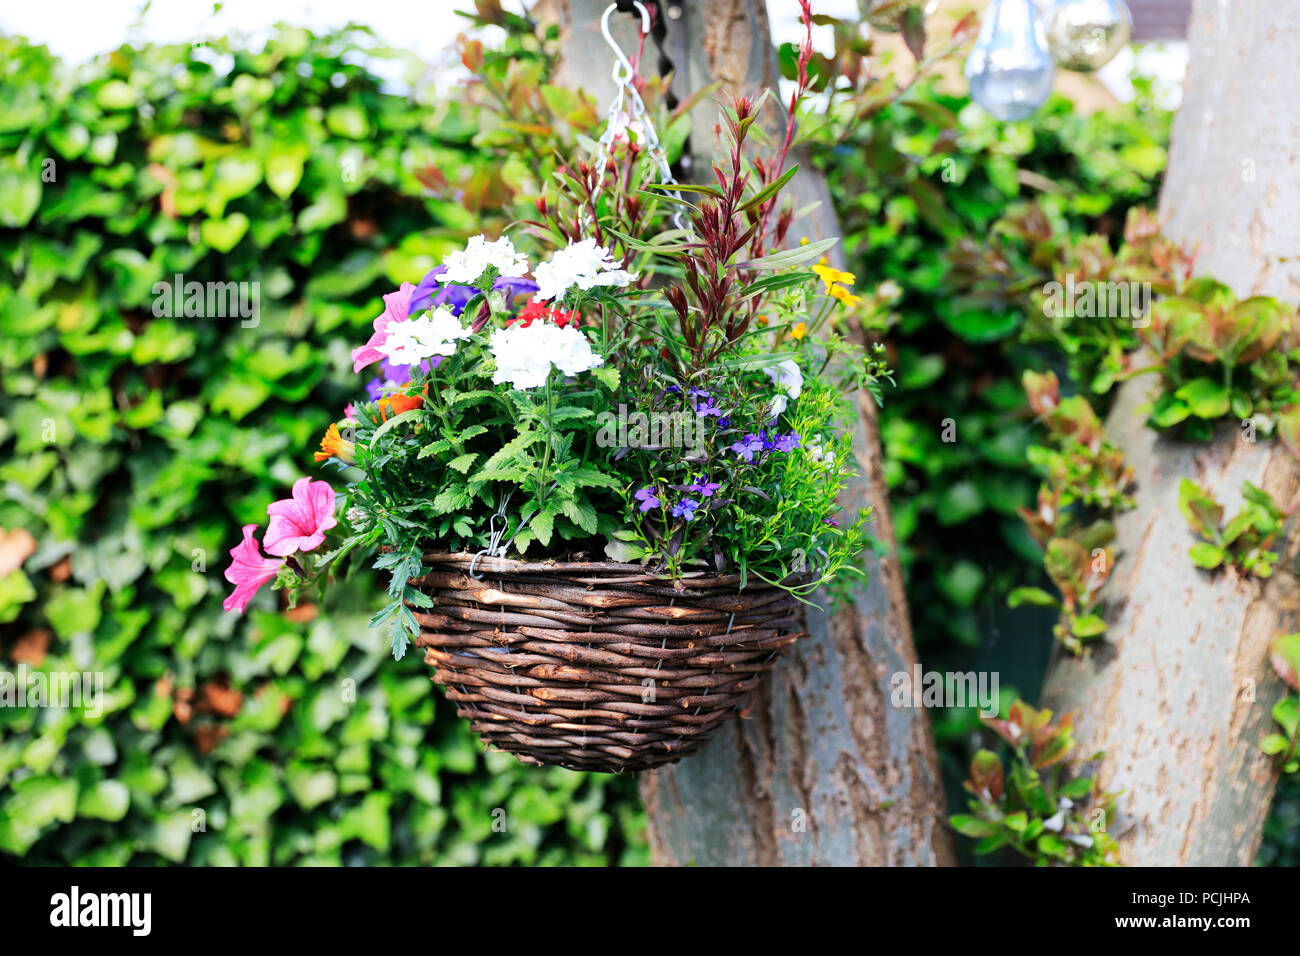 Blumenampel, hängenden Korb Pflanzen, hängenden Korb Blumen, hängenden Korb  Blüte, Korb Sommer hängend, hängenden Korb UK, hängende Körbe  Stockfotografie - Alamy